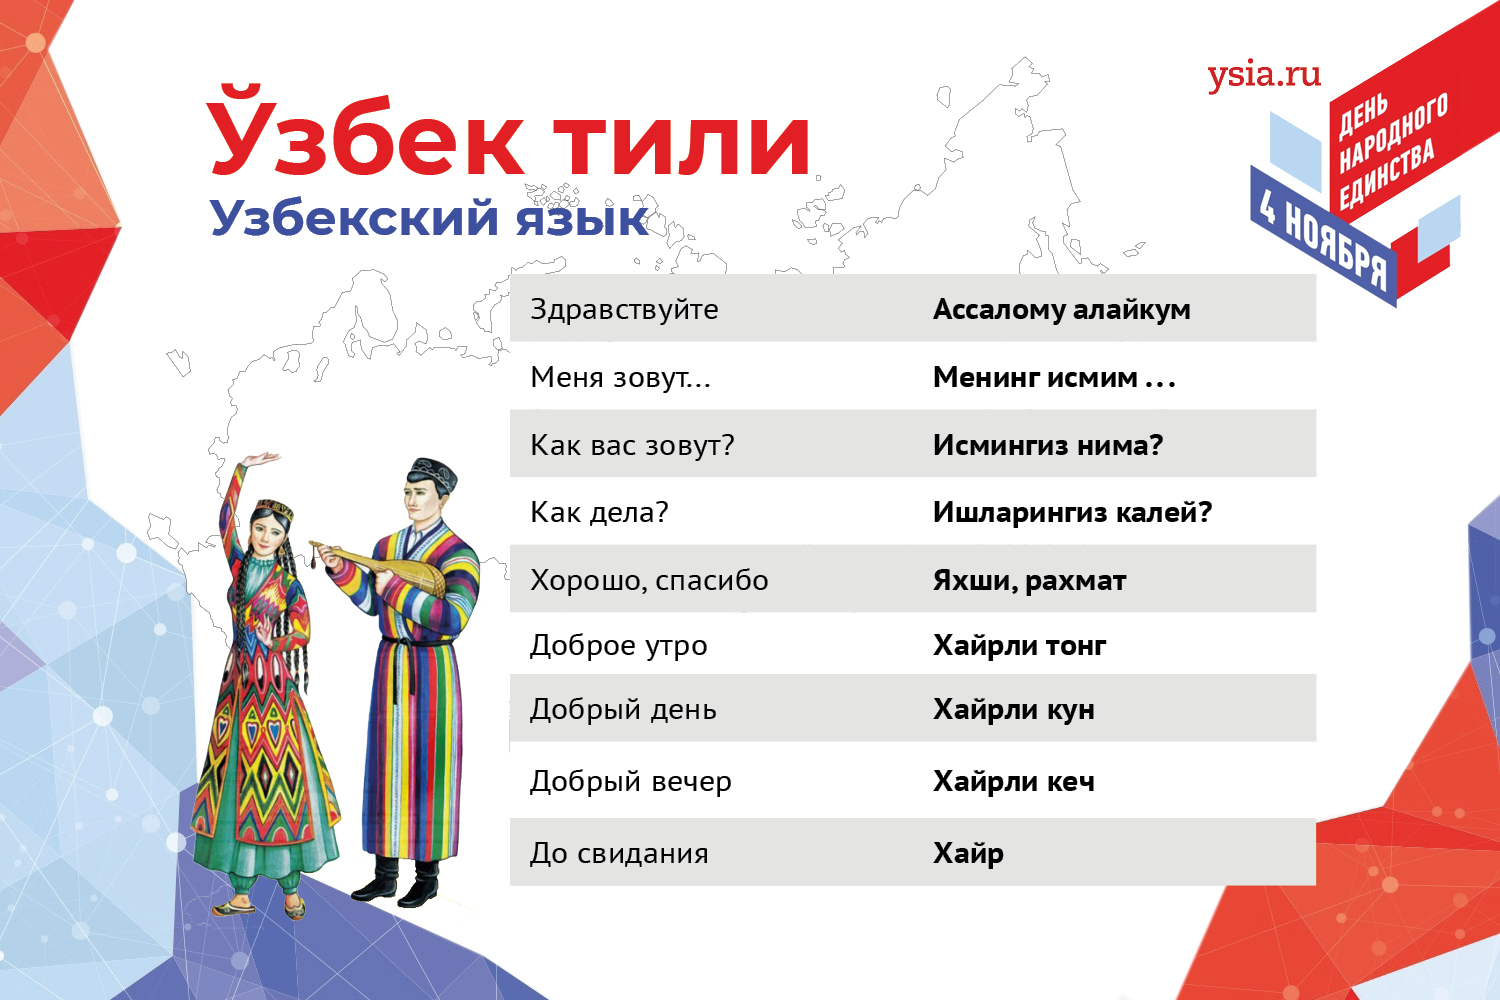 Что означает узбекское слово. Узбекский язык. Изучение узбекского языка. Учить узбекский язык. Изучаем семью узбекский язык.